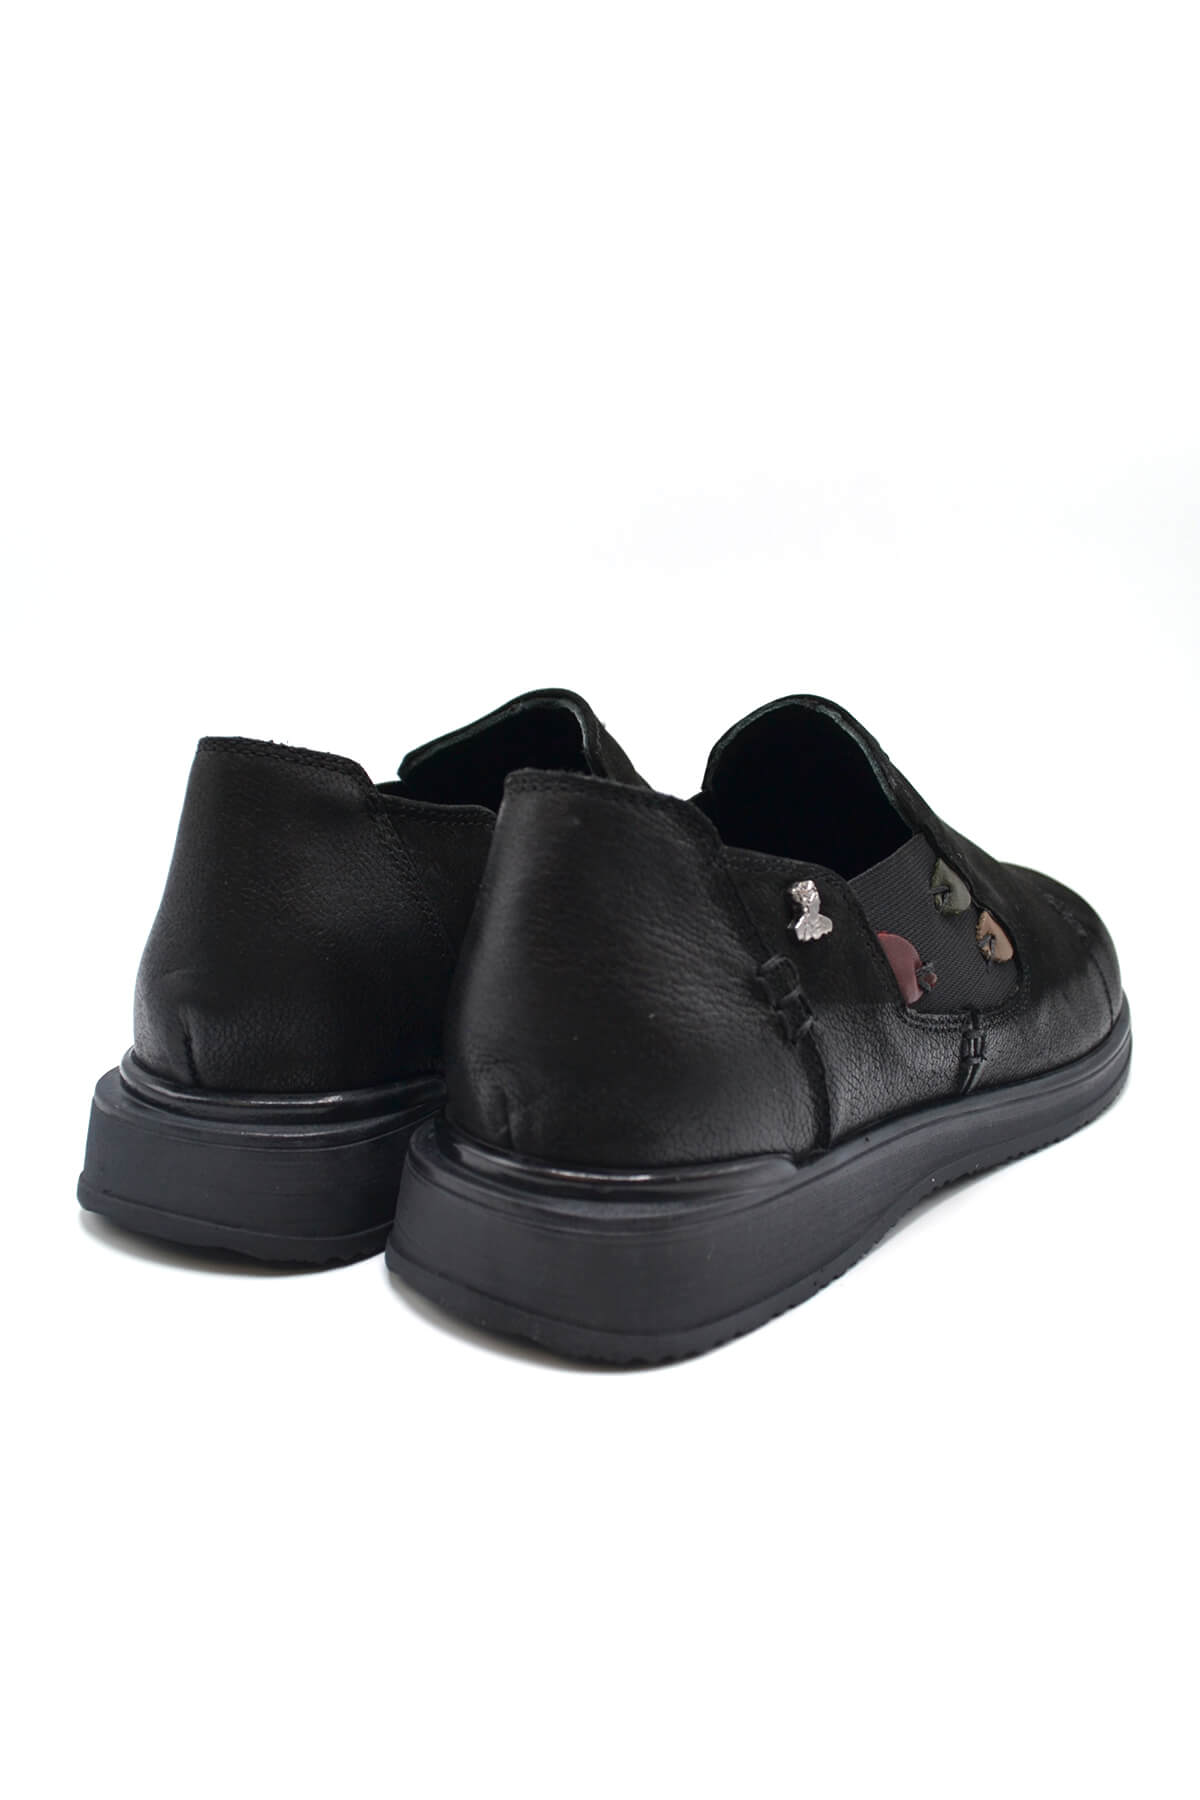 Kadın Casual Deri Ayakkabı Siyah 2250902K - Thumbnail